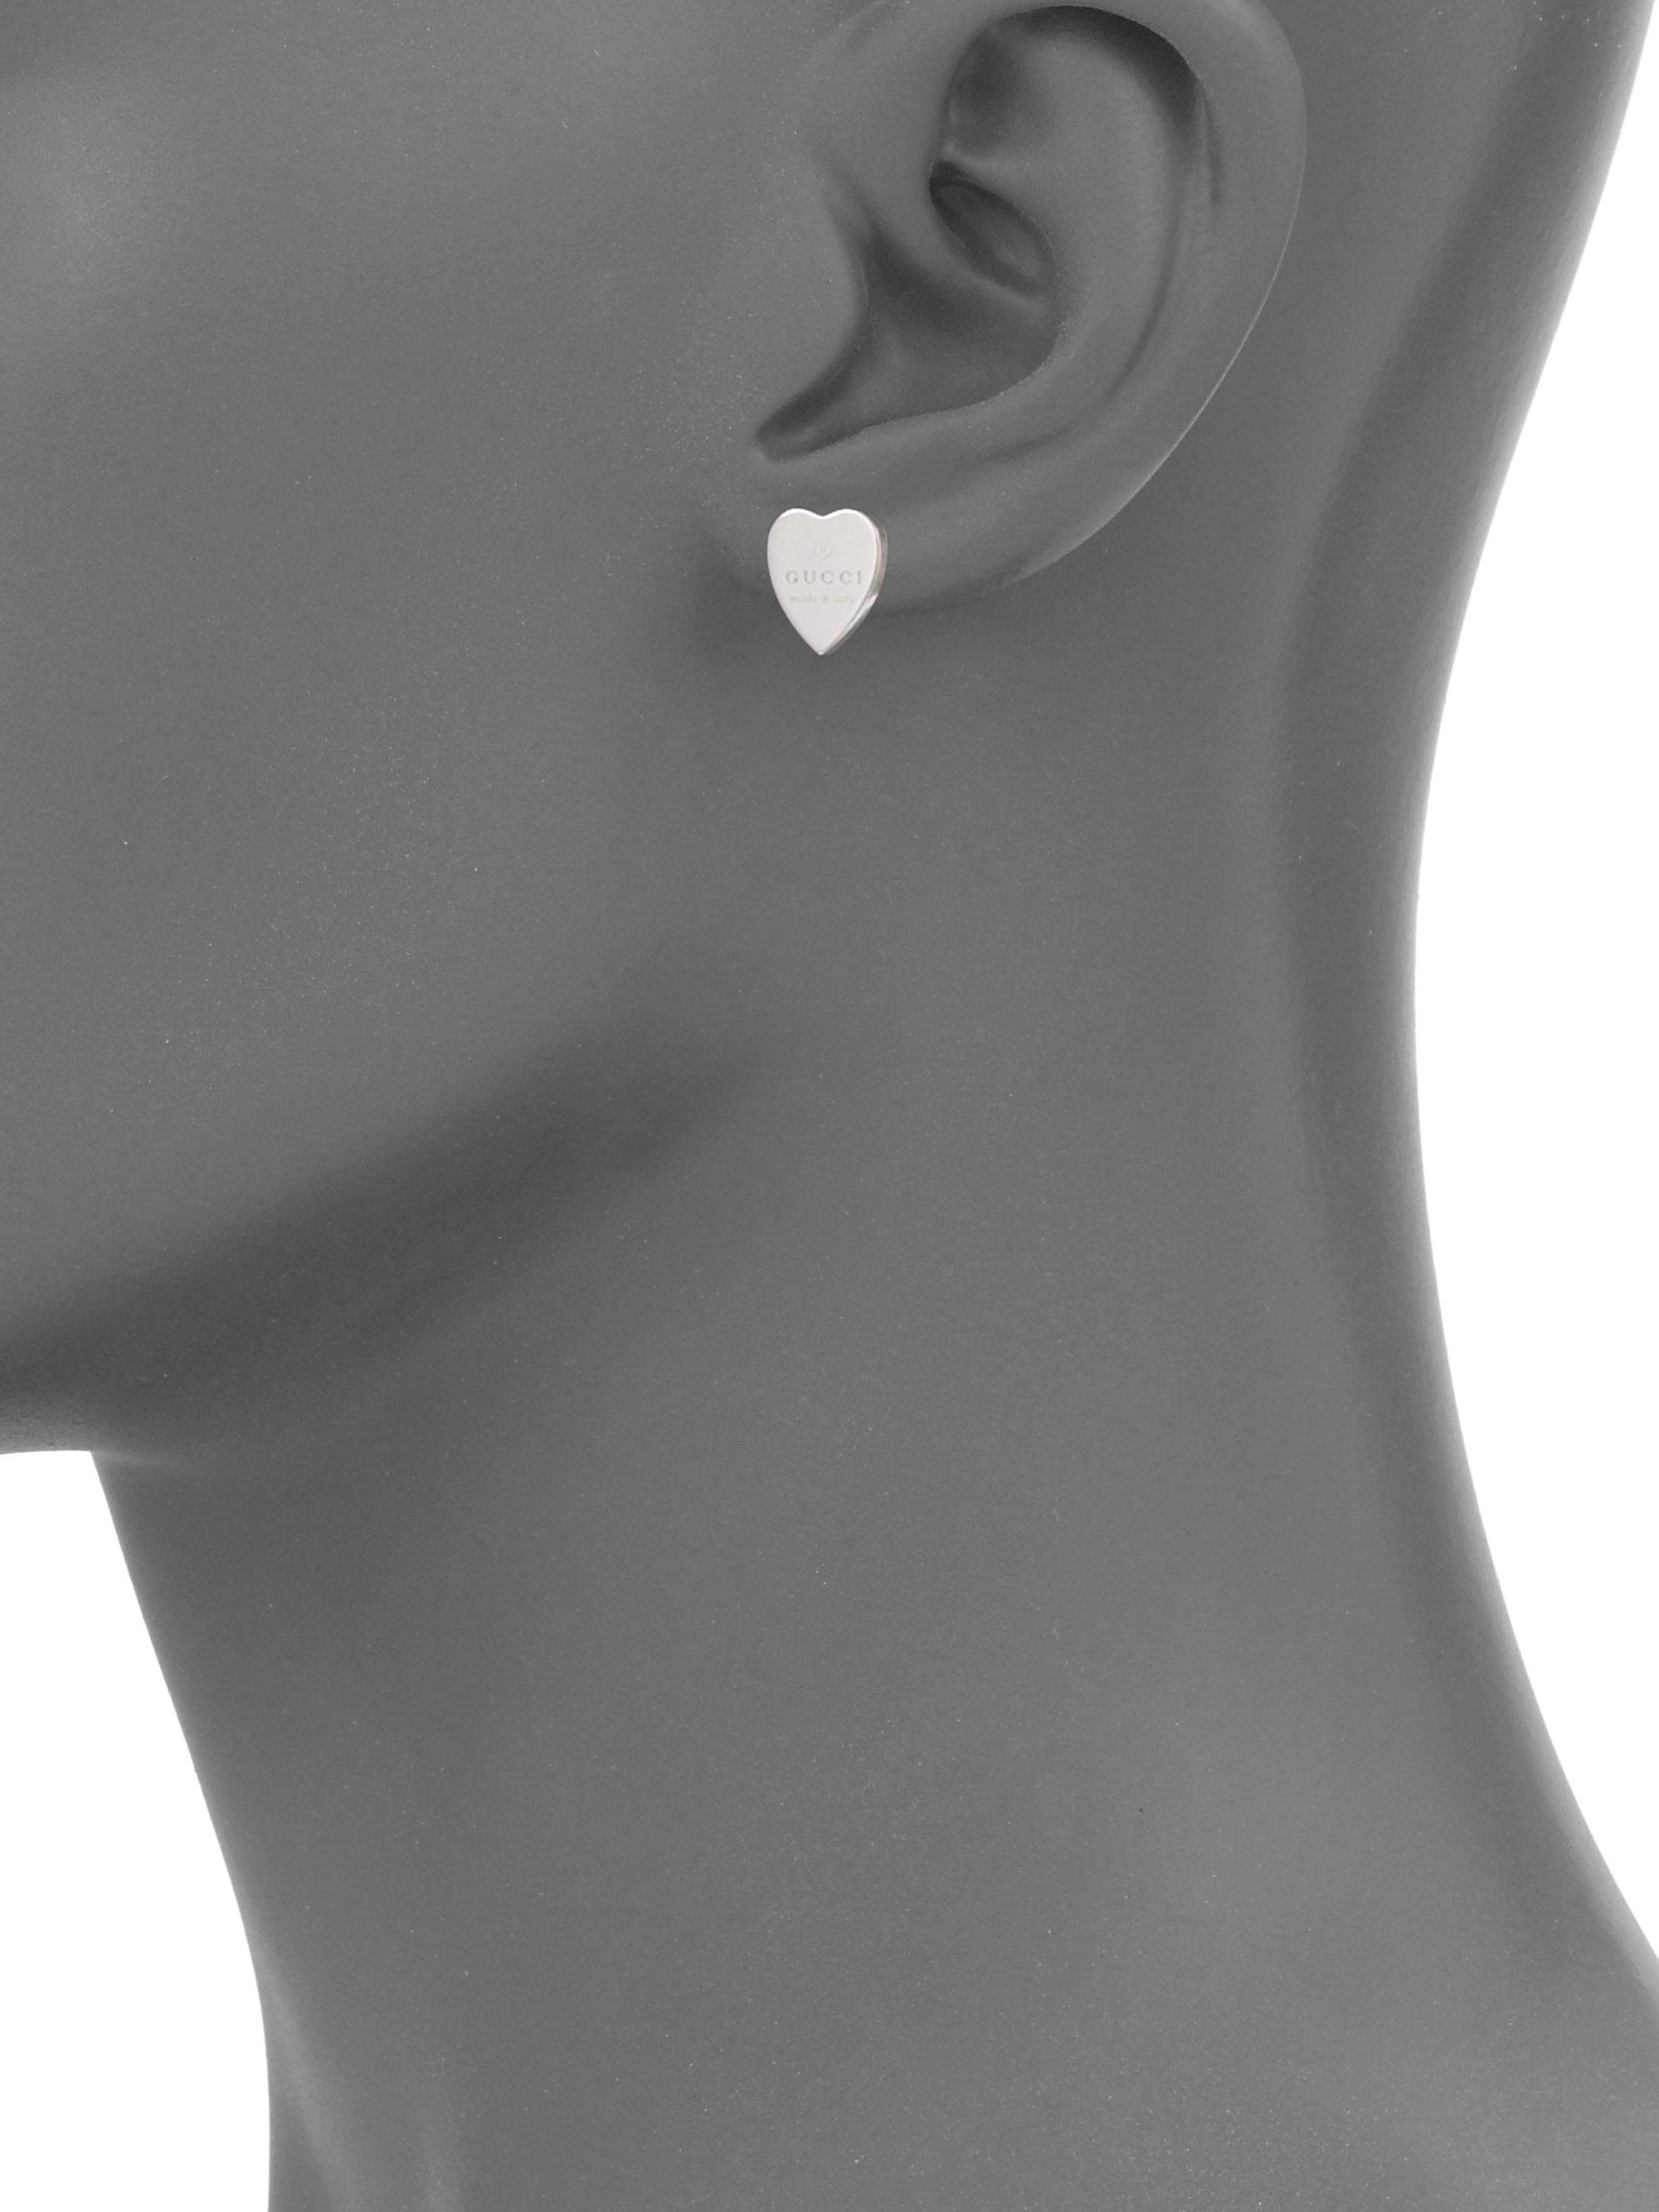 gucci trademark silver heart earrings